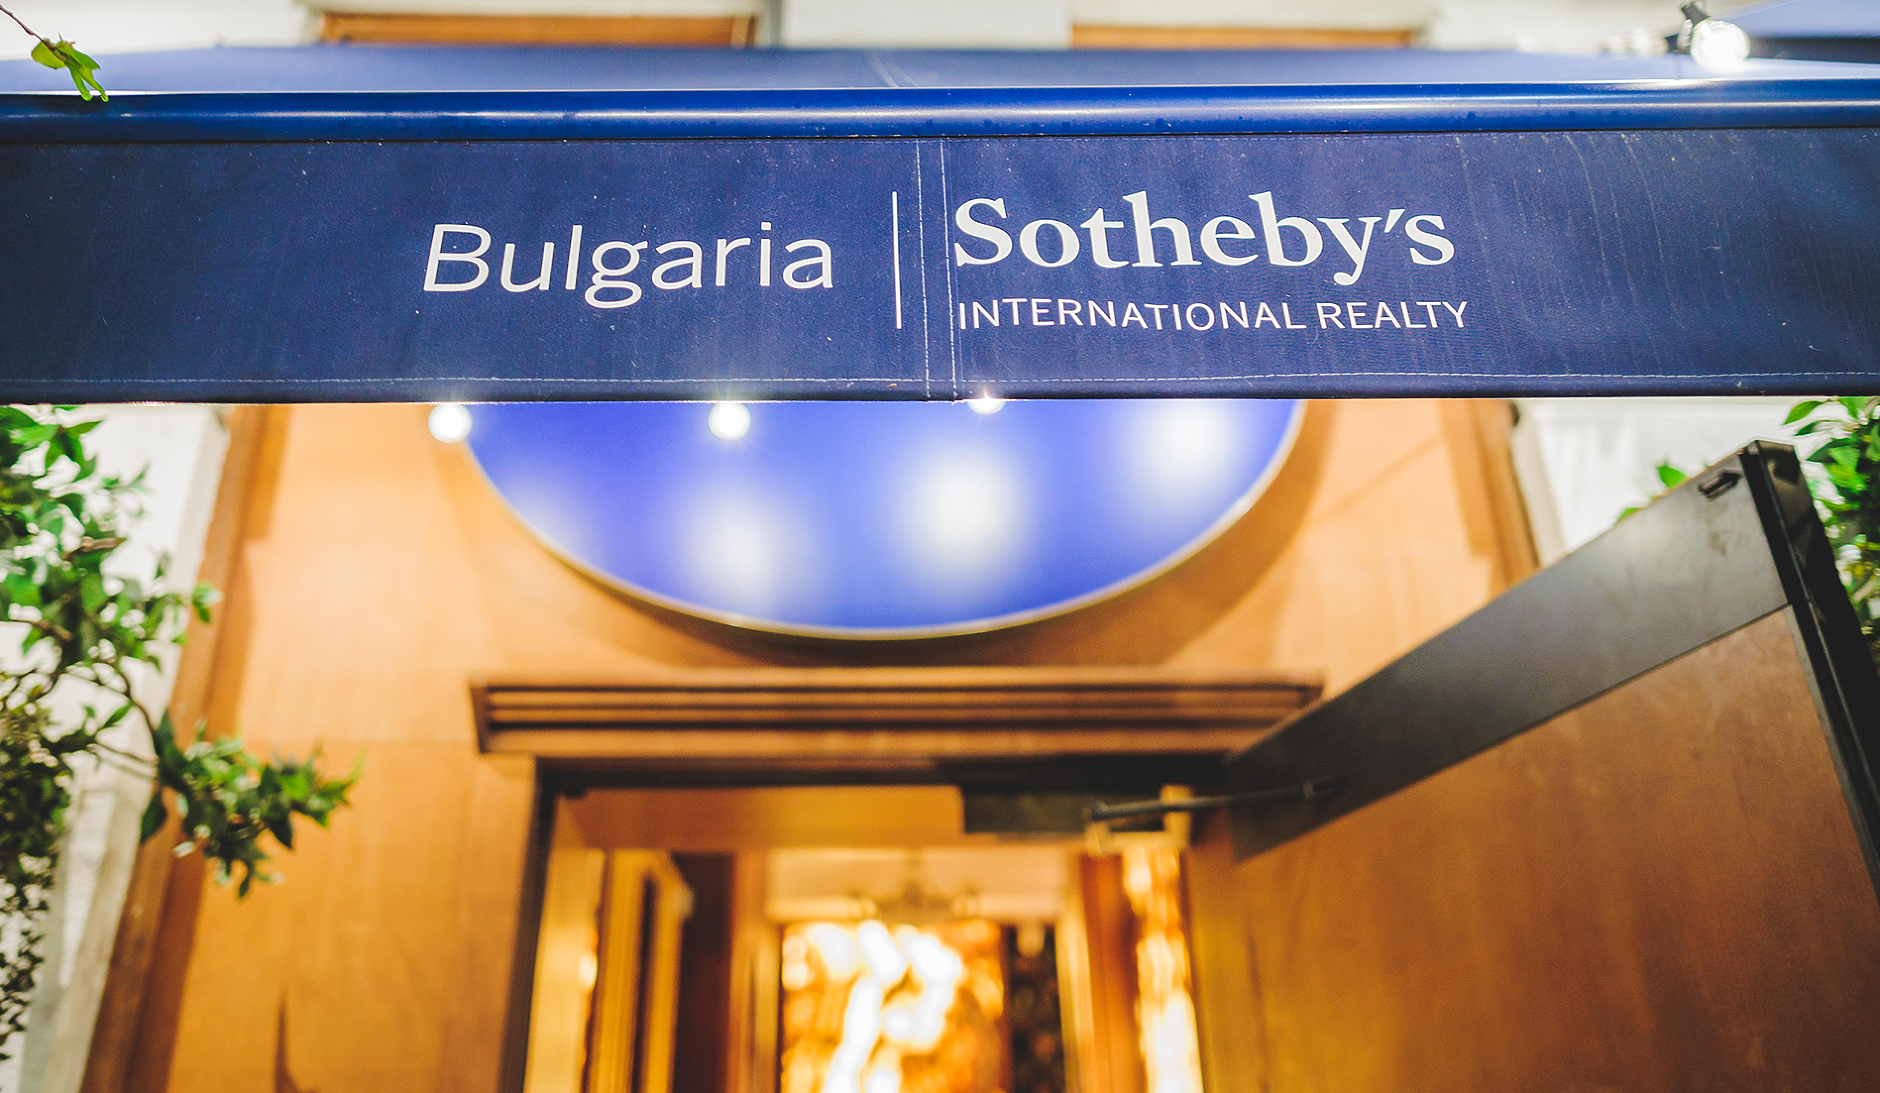 Луксозният сегмент в България - тенденции, бъдеще и настояще